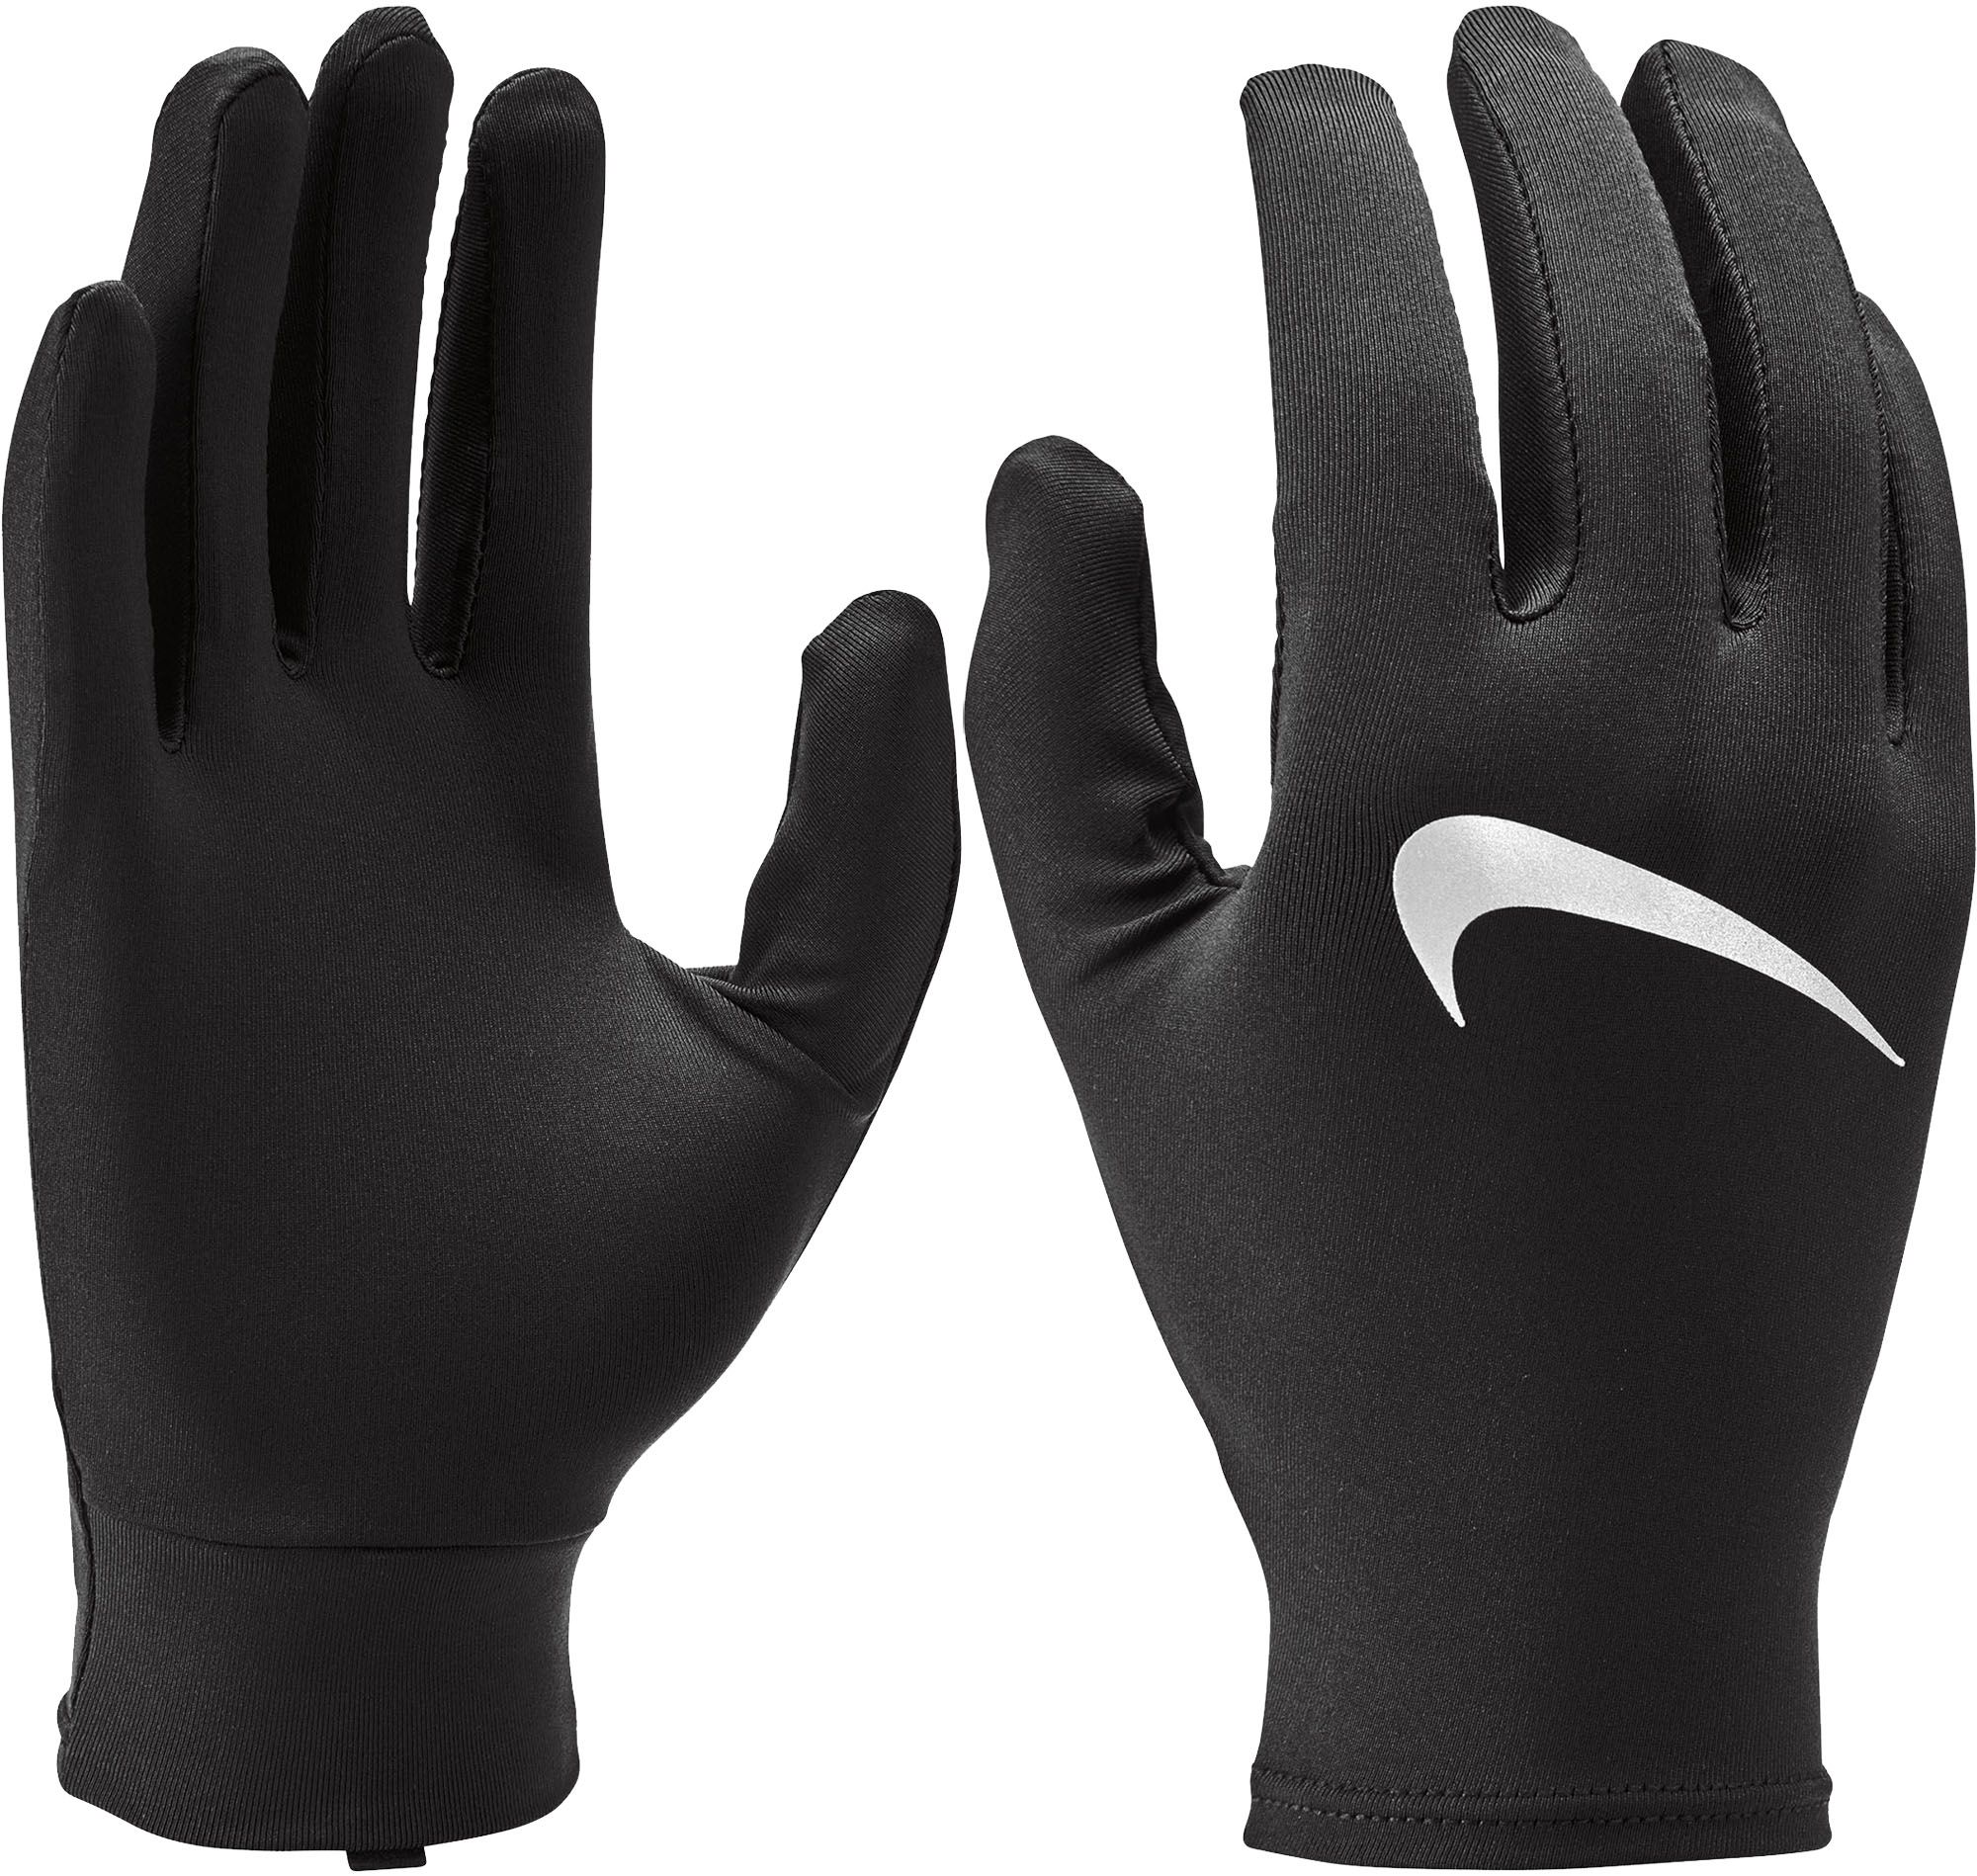 nike hand gloves for winter